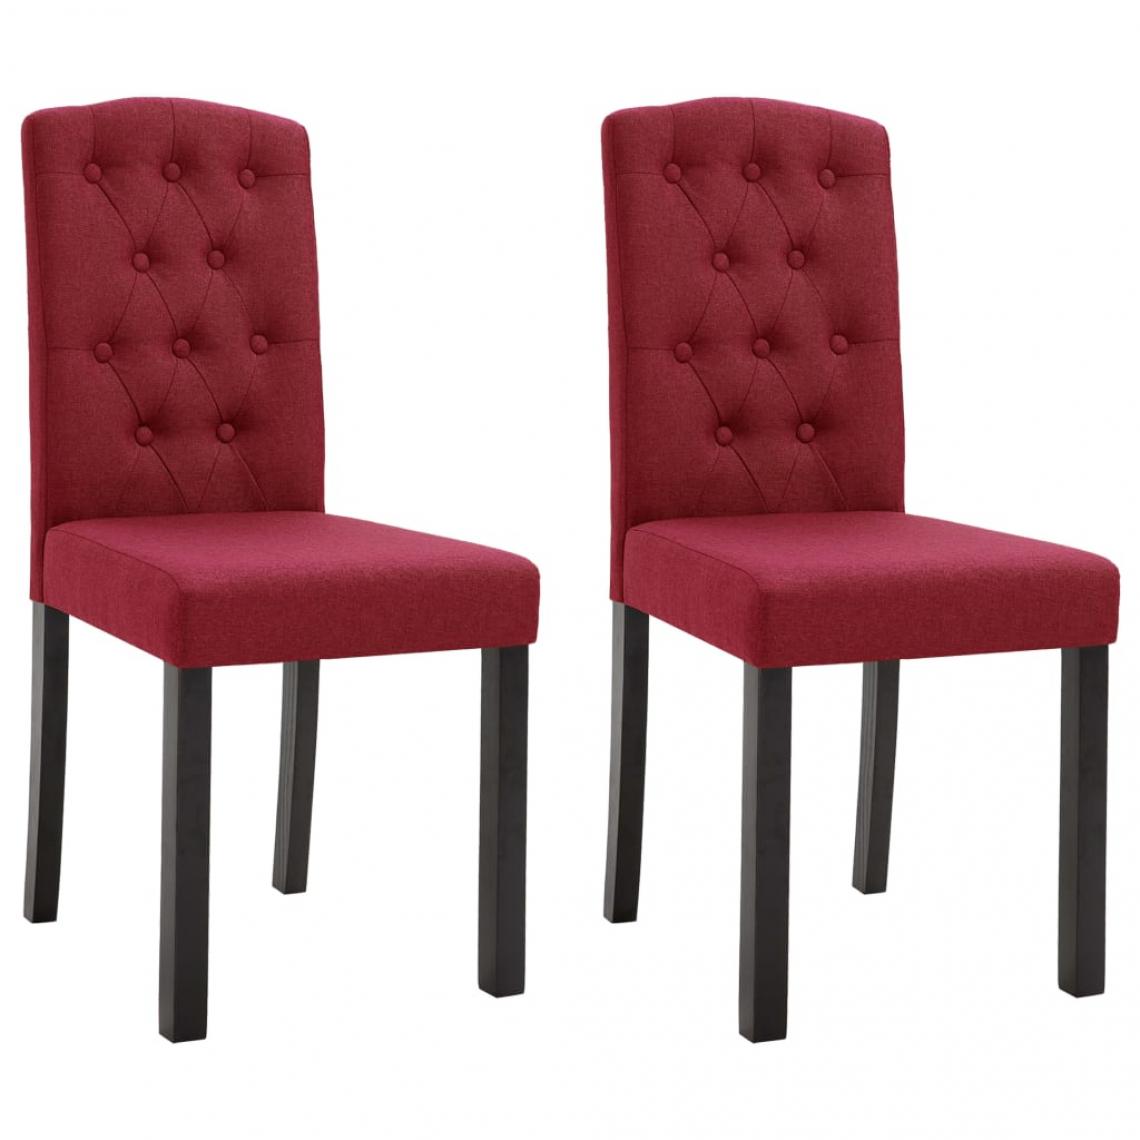 Decoshop26 - Lot de 2 chaises de salle à manger cuisine design classique tissu rouge bordeaux CDS020989 - Chaises